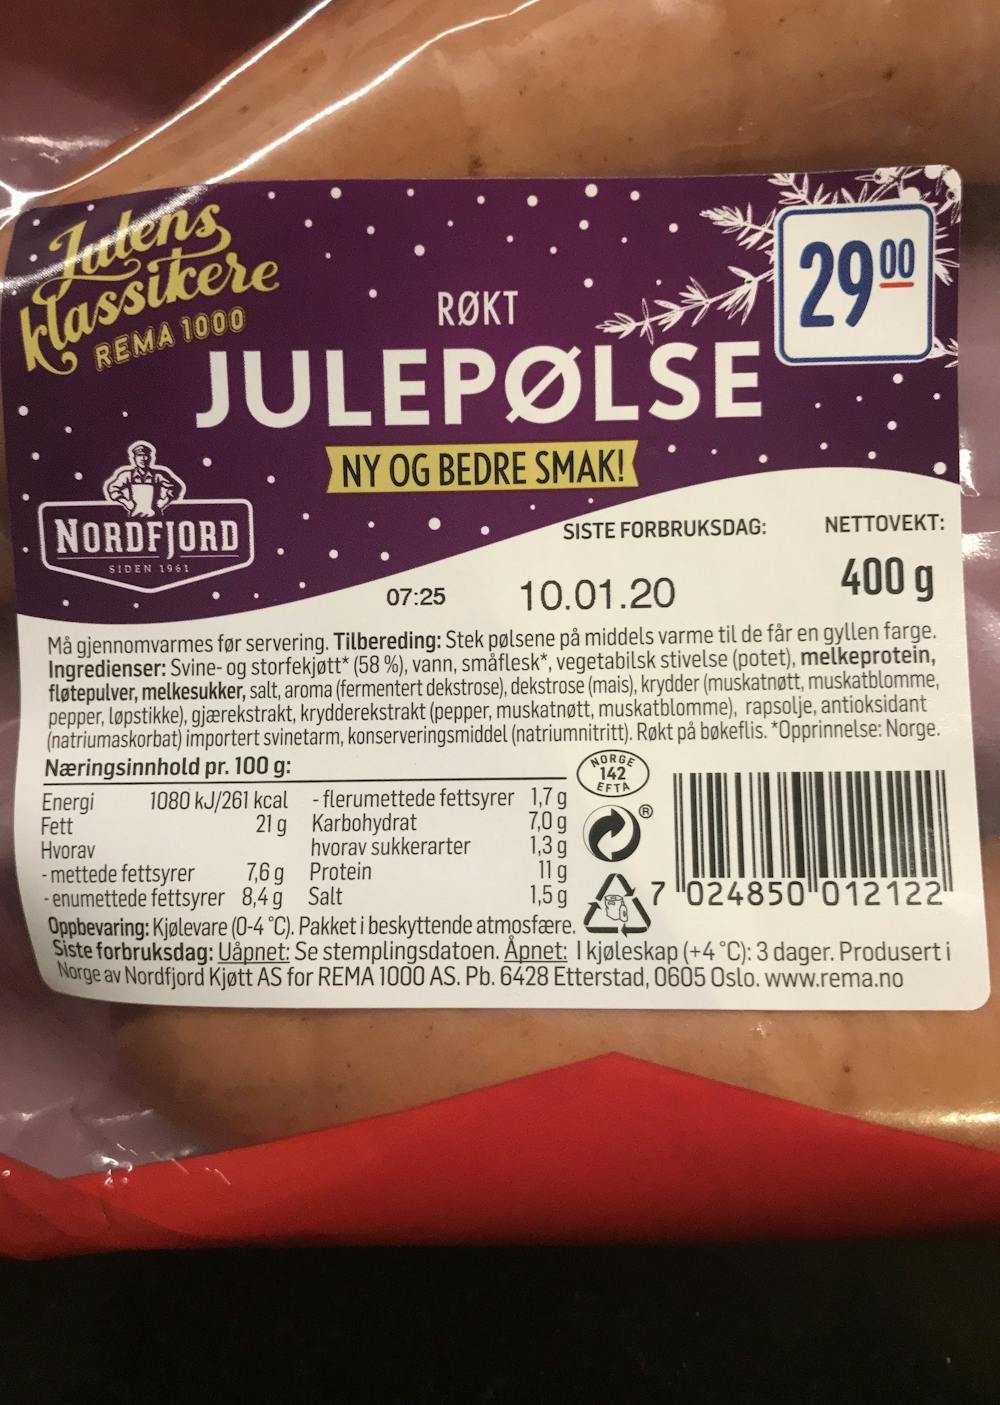 Ingredienslisten til Nordfjord Julepølse, røkt